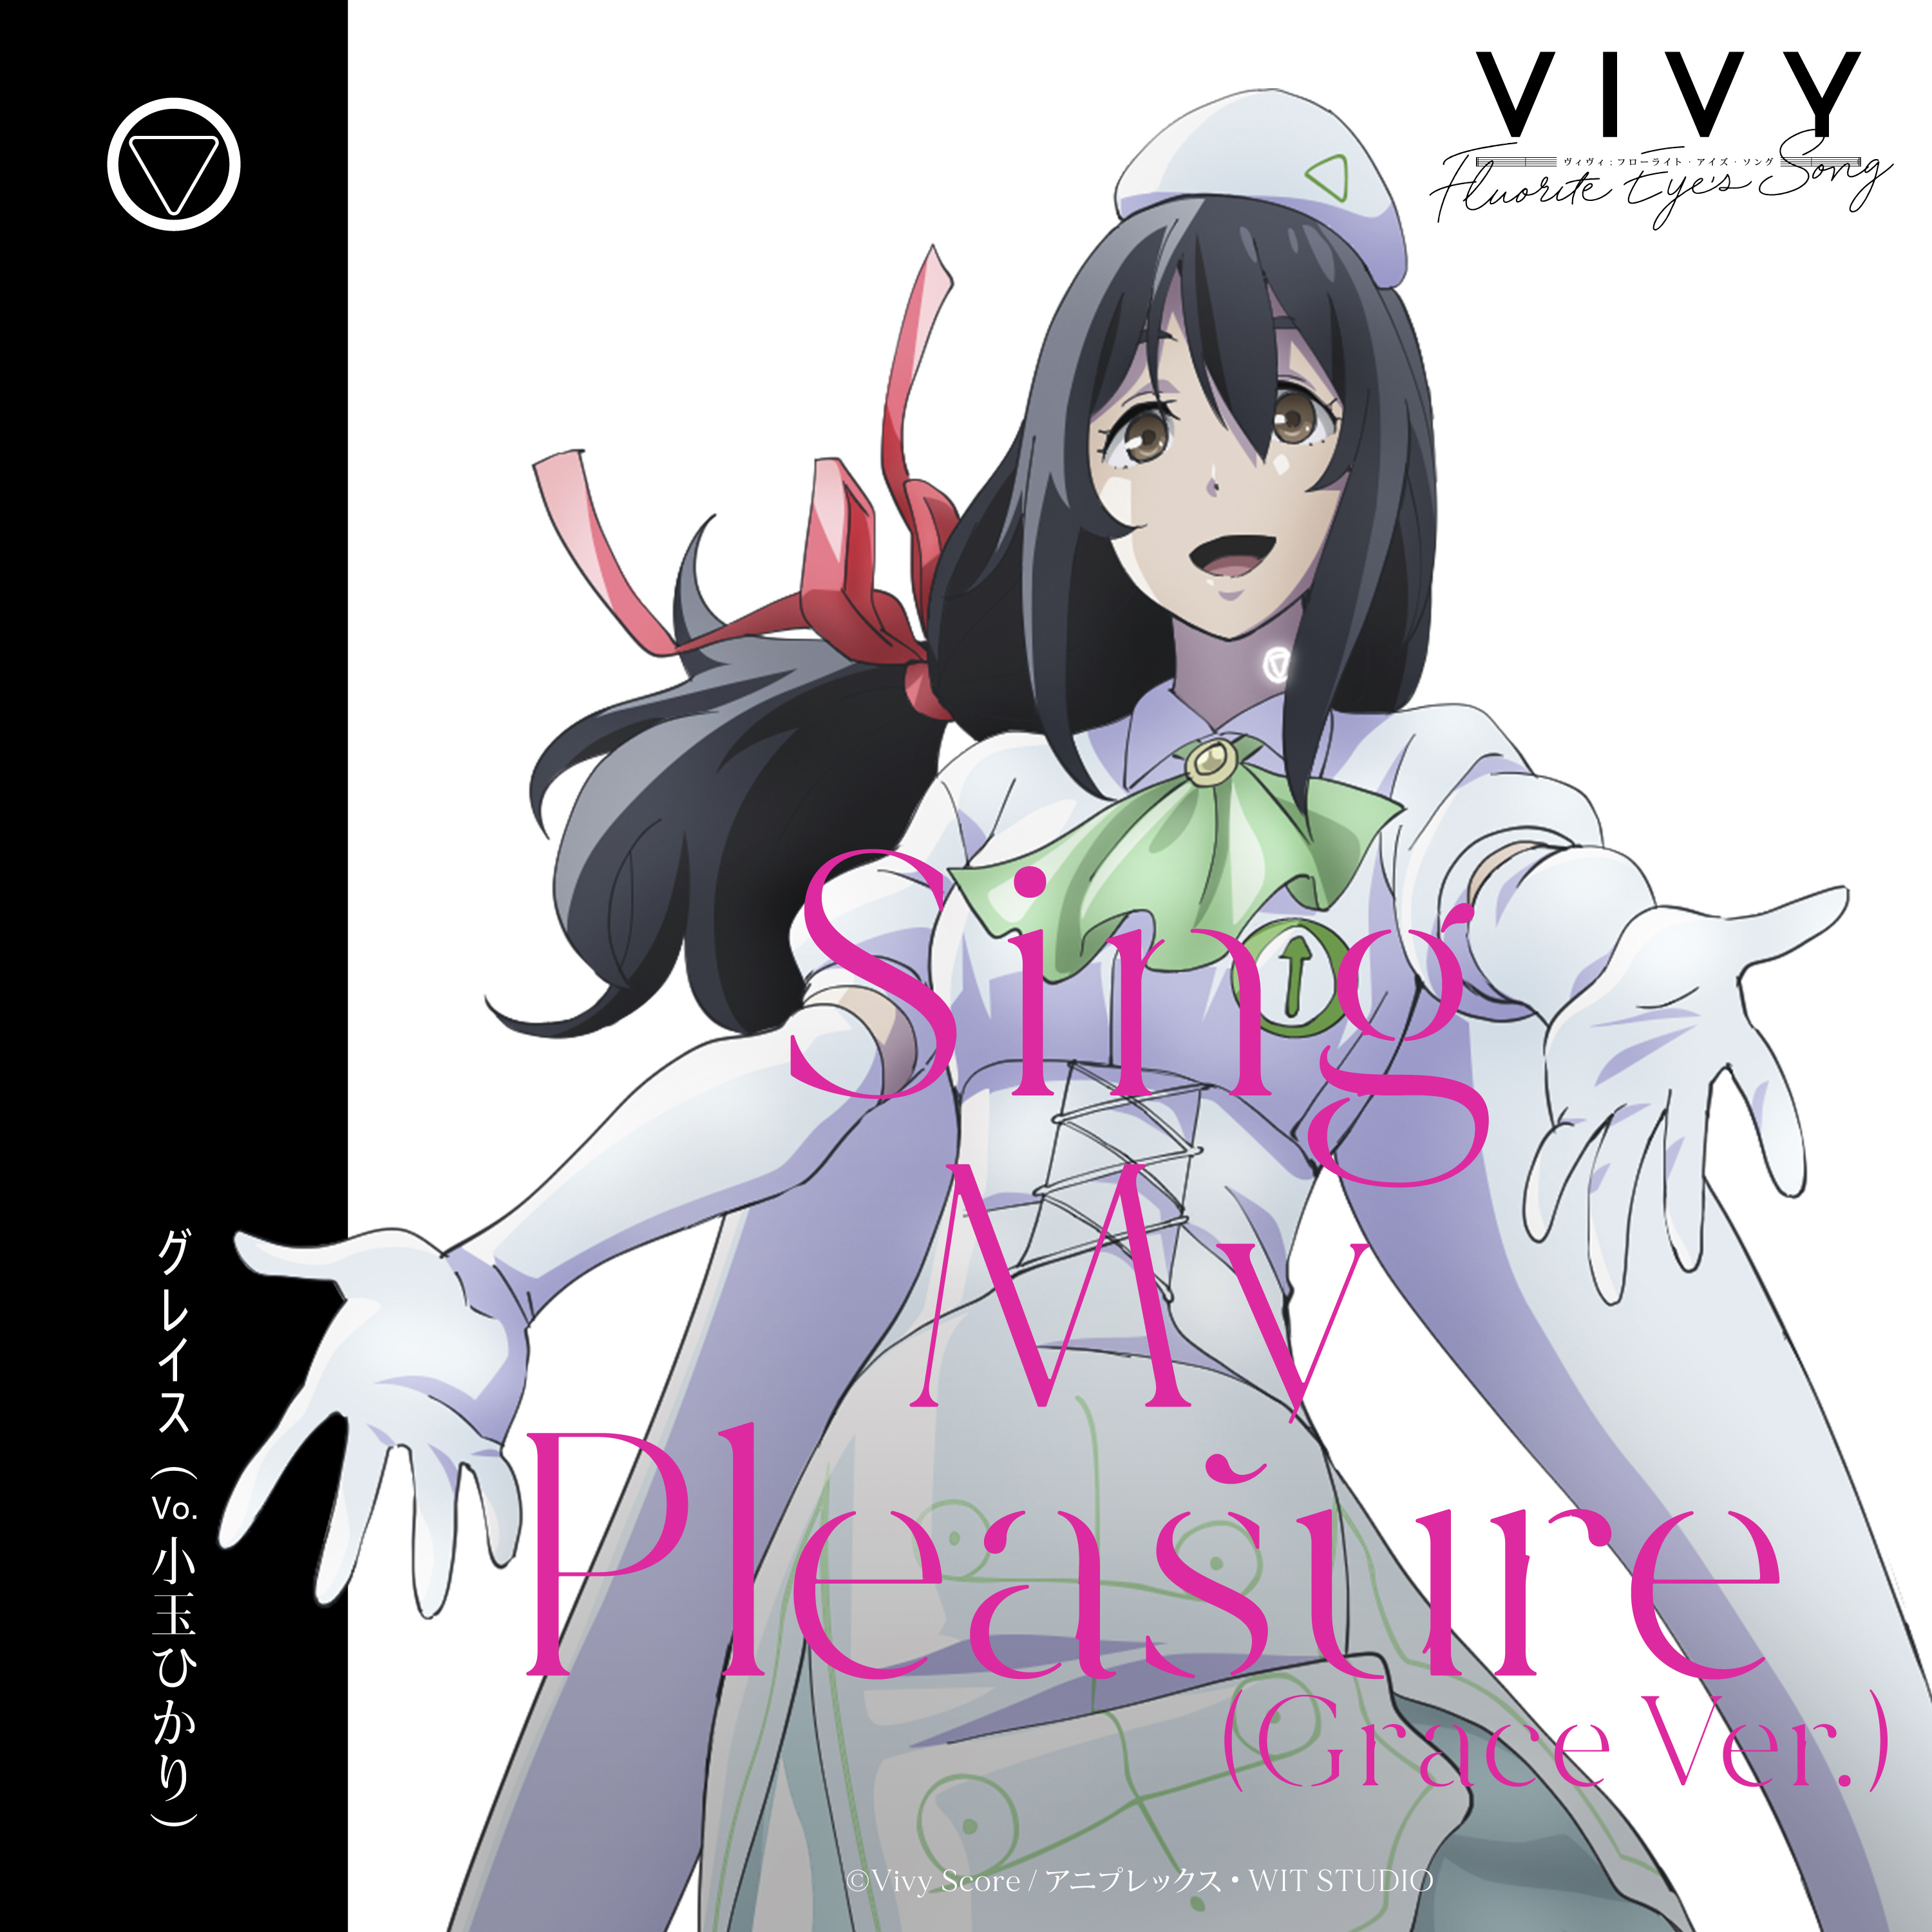 Vivy Fluorite EyeS Song  Sing My Pleasure  Japan CD  CDs Vinyl Japan  Store